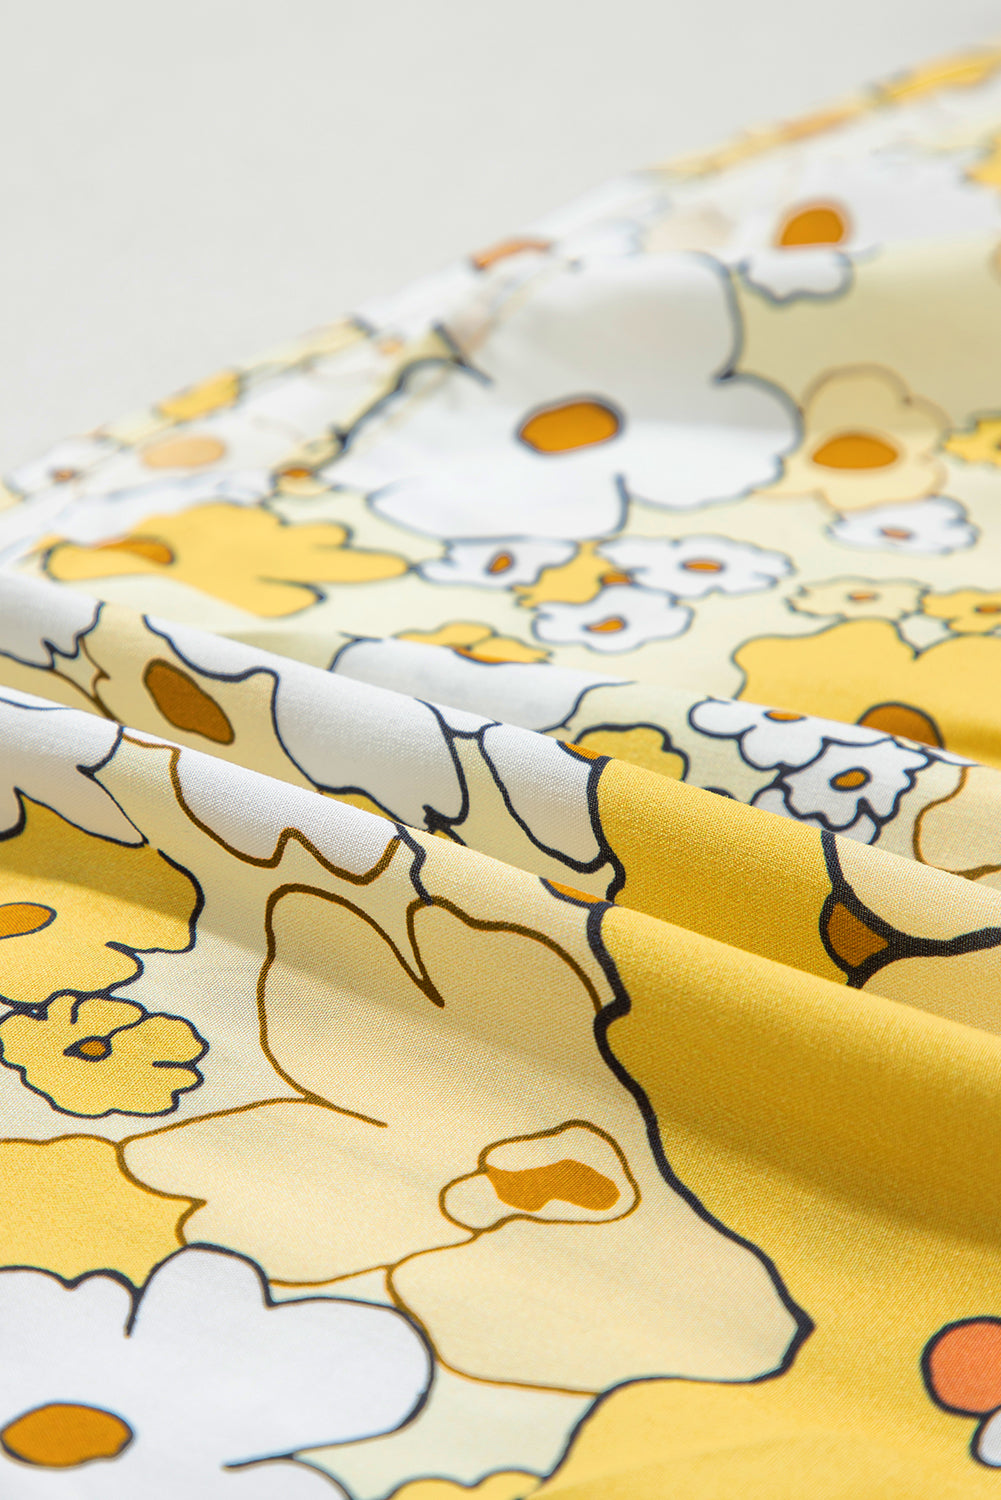 Débardeur boutonné à bretelles nouées en patchwork floral jaune